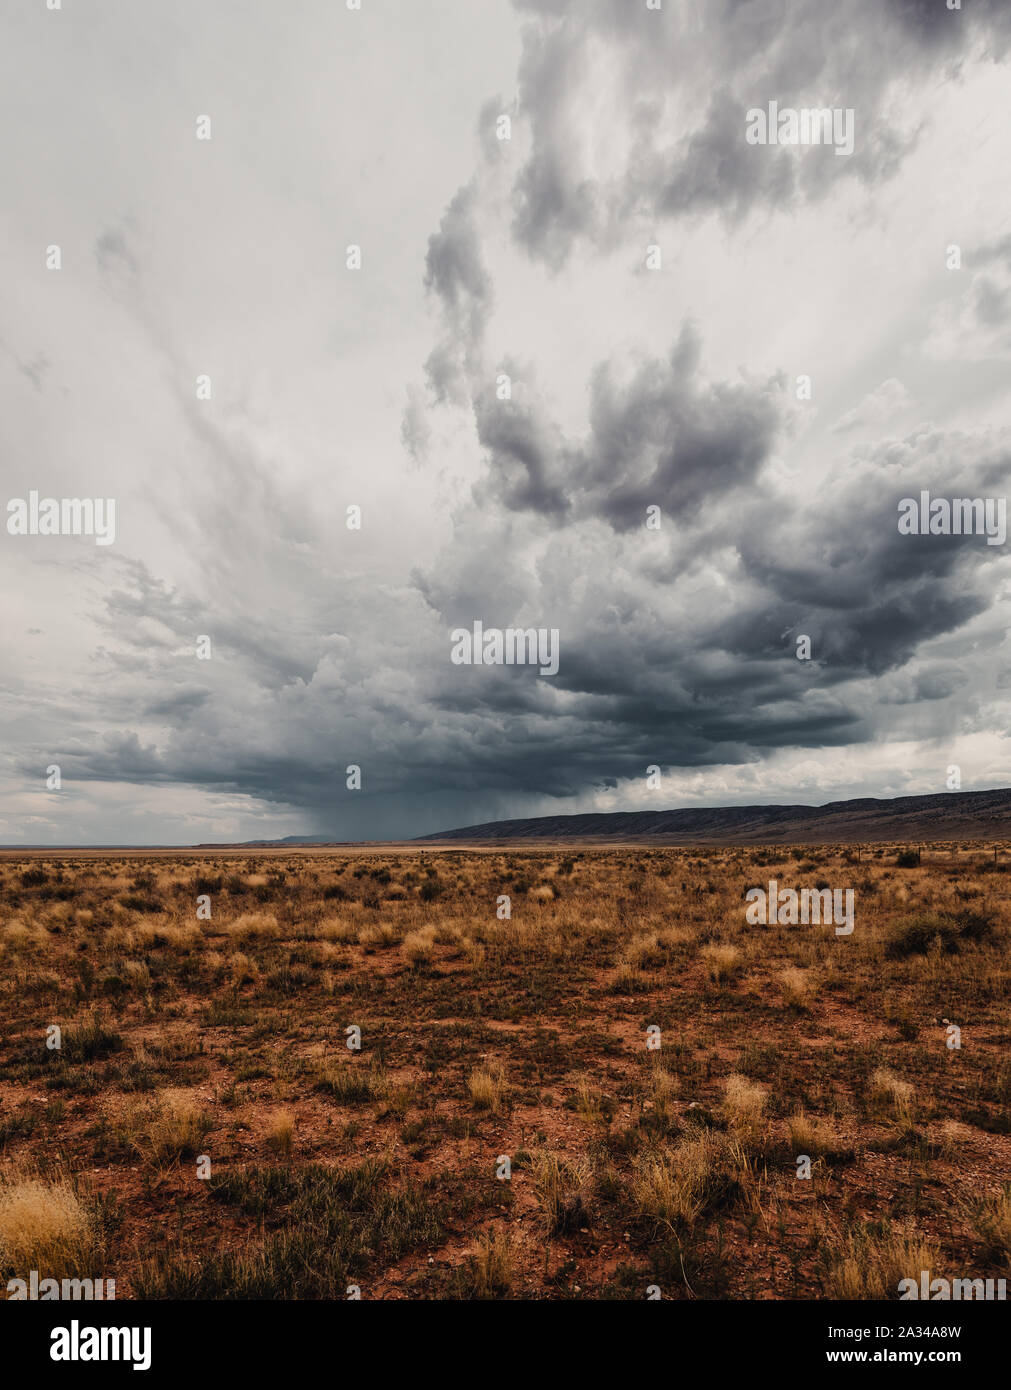 Thuderstorm au désert de l'Arizona Banque D'Images